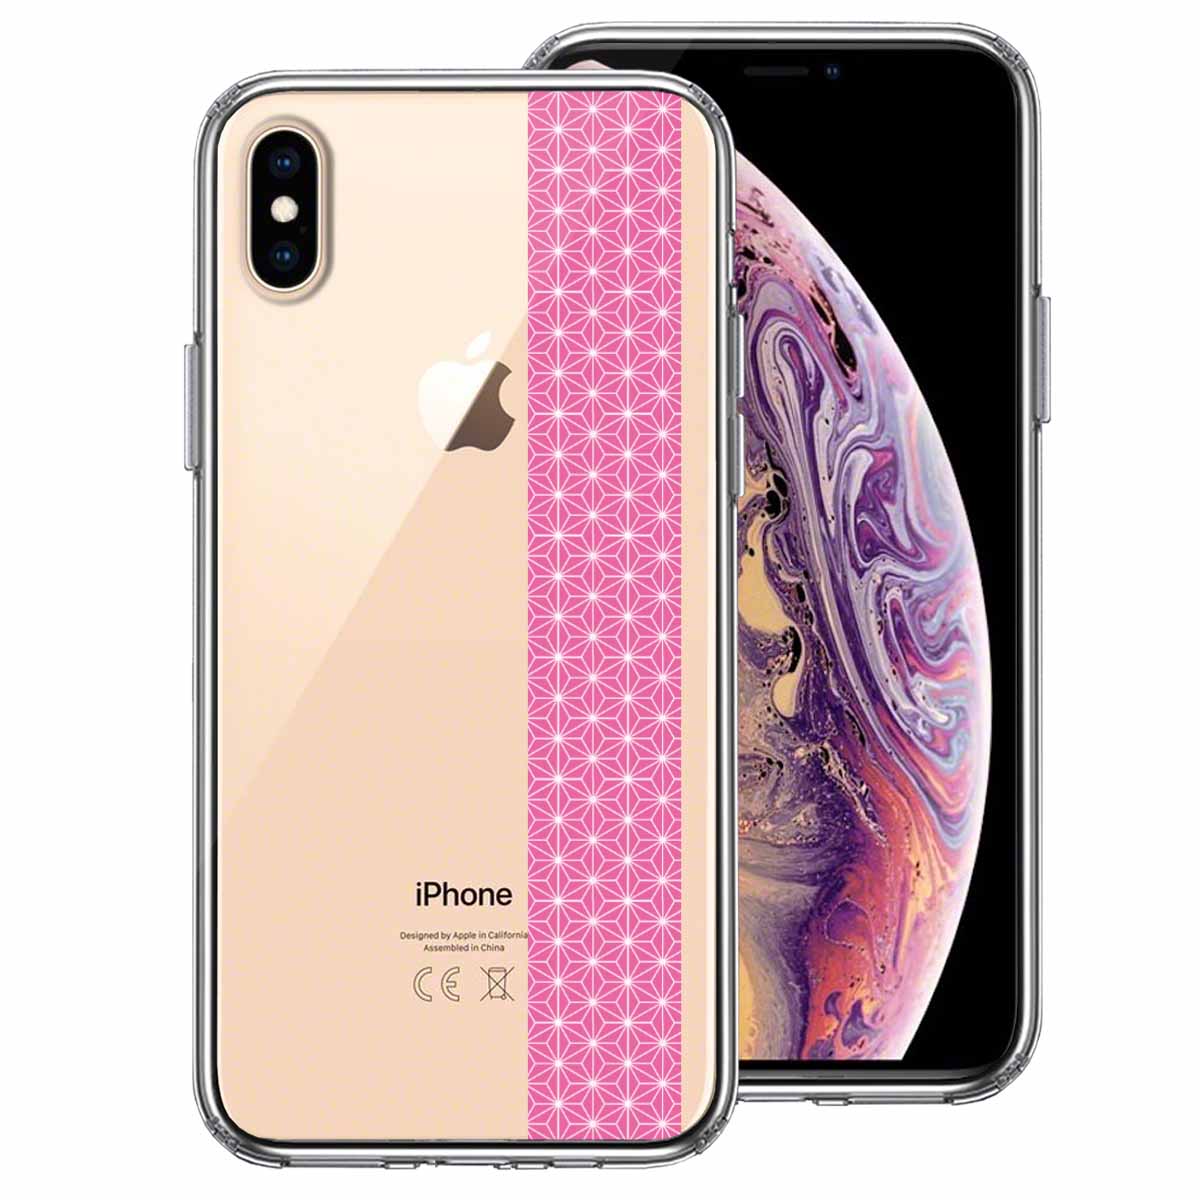 iPhoneX iPhoneXS 側面ソフト 背面ハード ハイブリッド クリア ケース 和柄 帯  麻の葉模様 桃色 ピンク